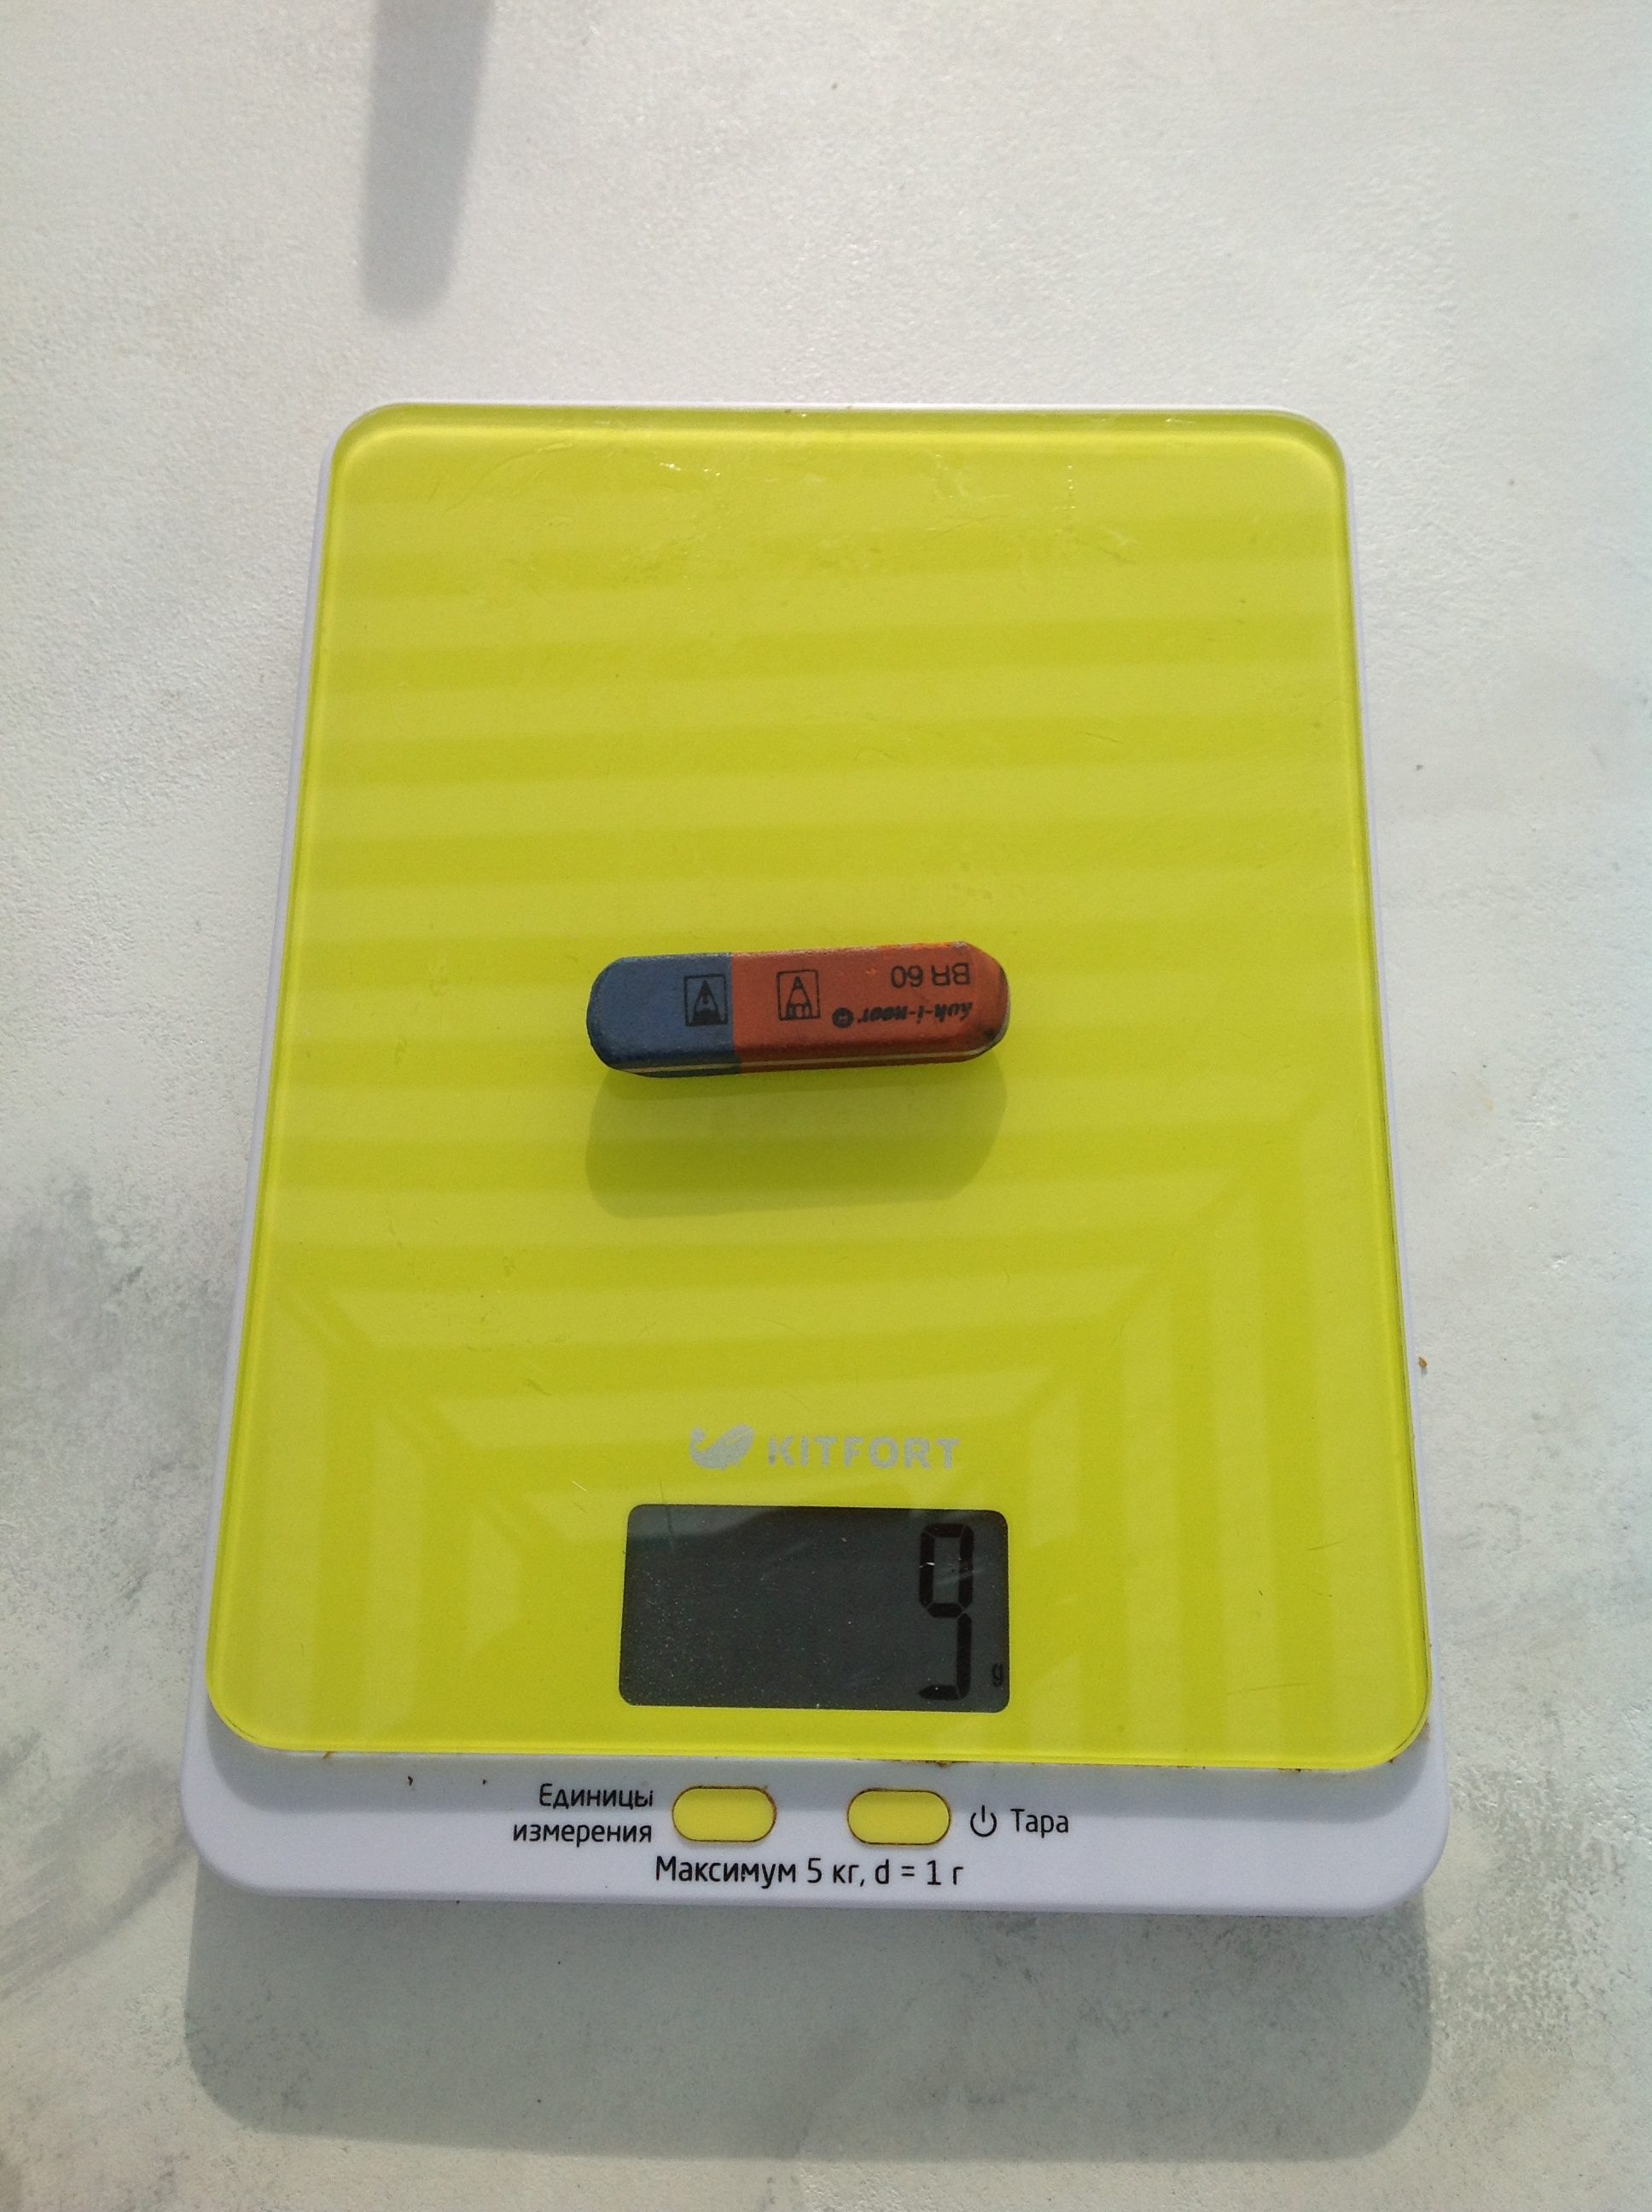 How much does an eraser weigh?